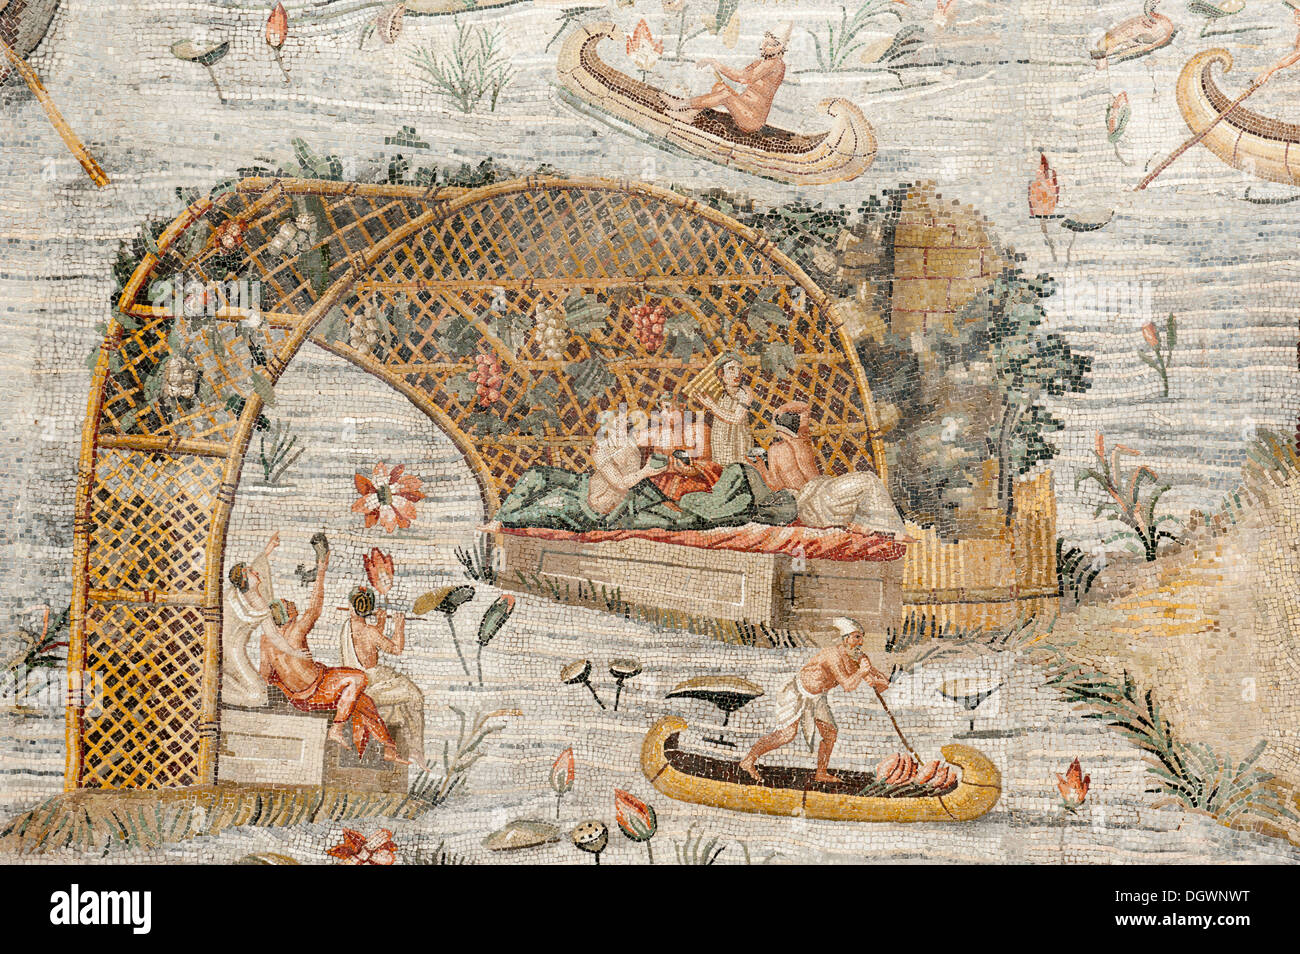 L'antiquité romaine, mosaïque représentant le Nil, la mosaïque Barberini, théâtre d'une frénésie de consommation dans une pergola avec des gens assis Banque D'Images